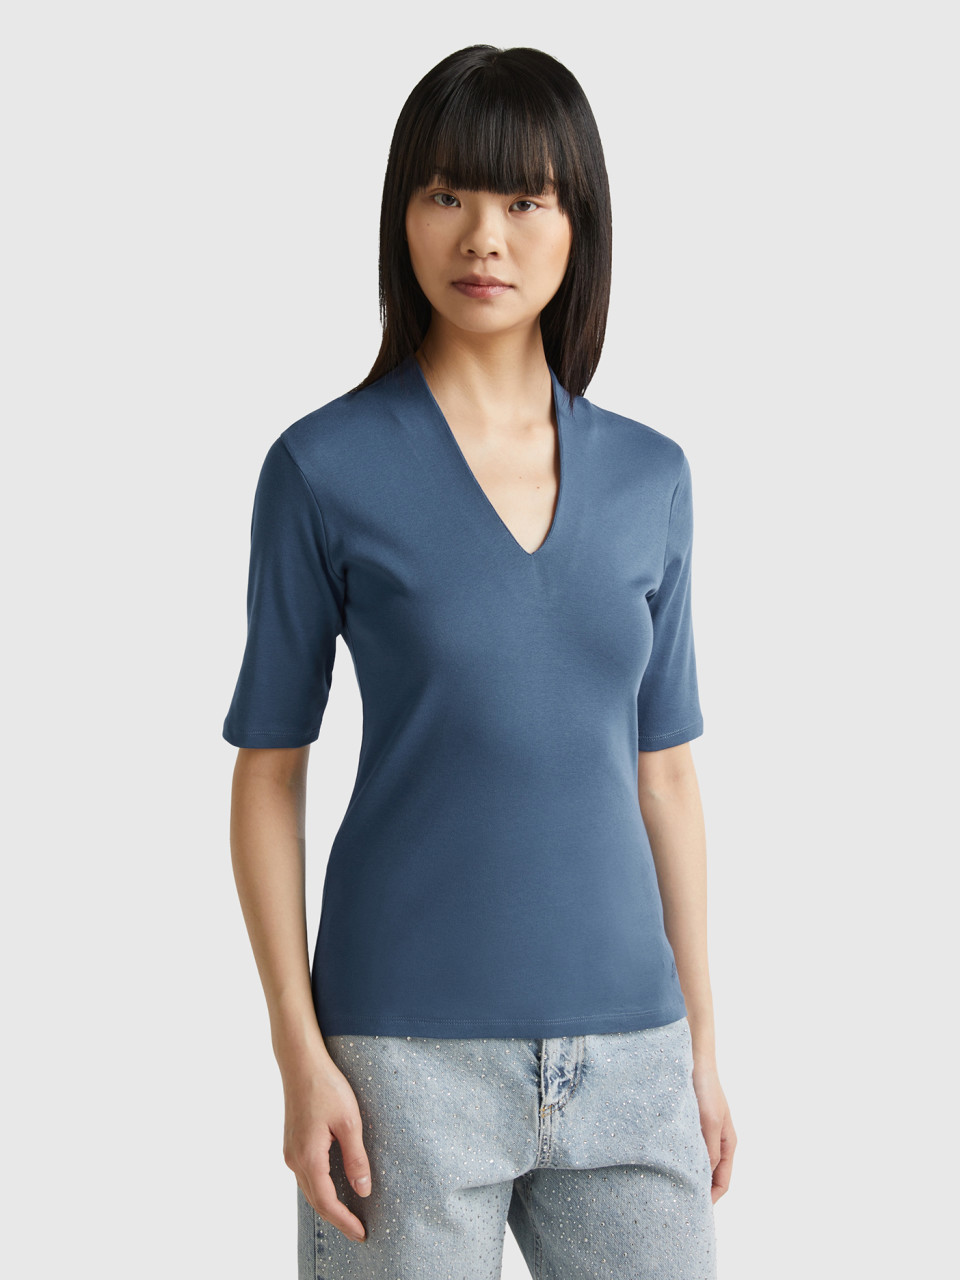 Benetton, Camiseta Slim Fit De Algodón De Fibra Larga, Azul Grisáceo, Mujer